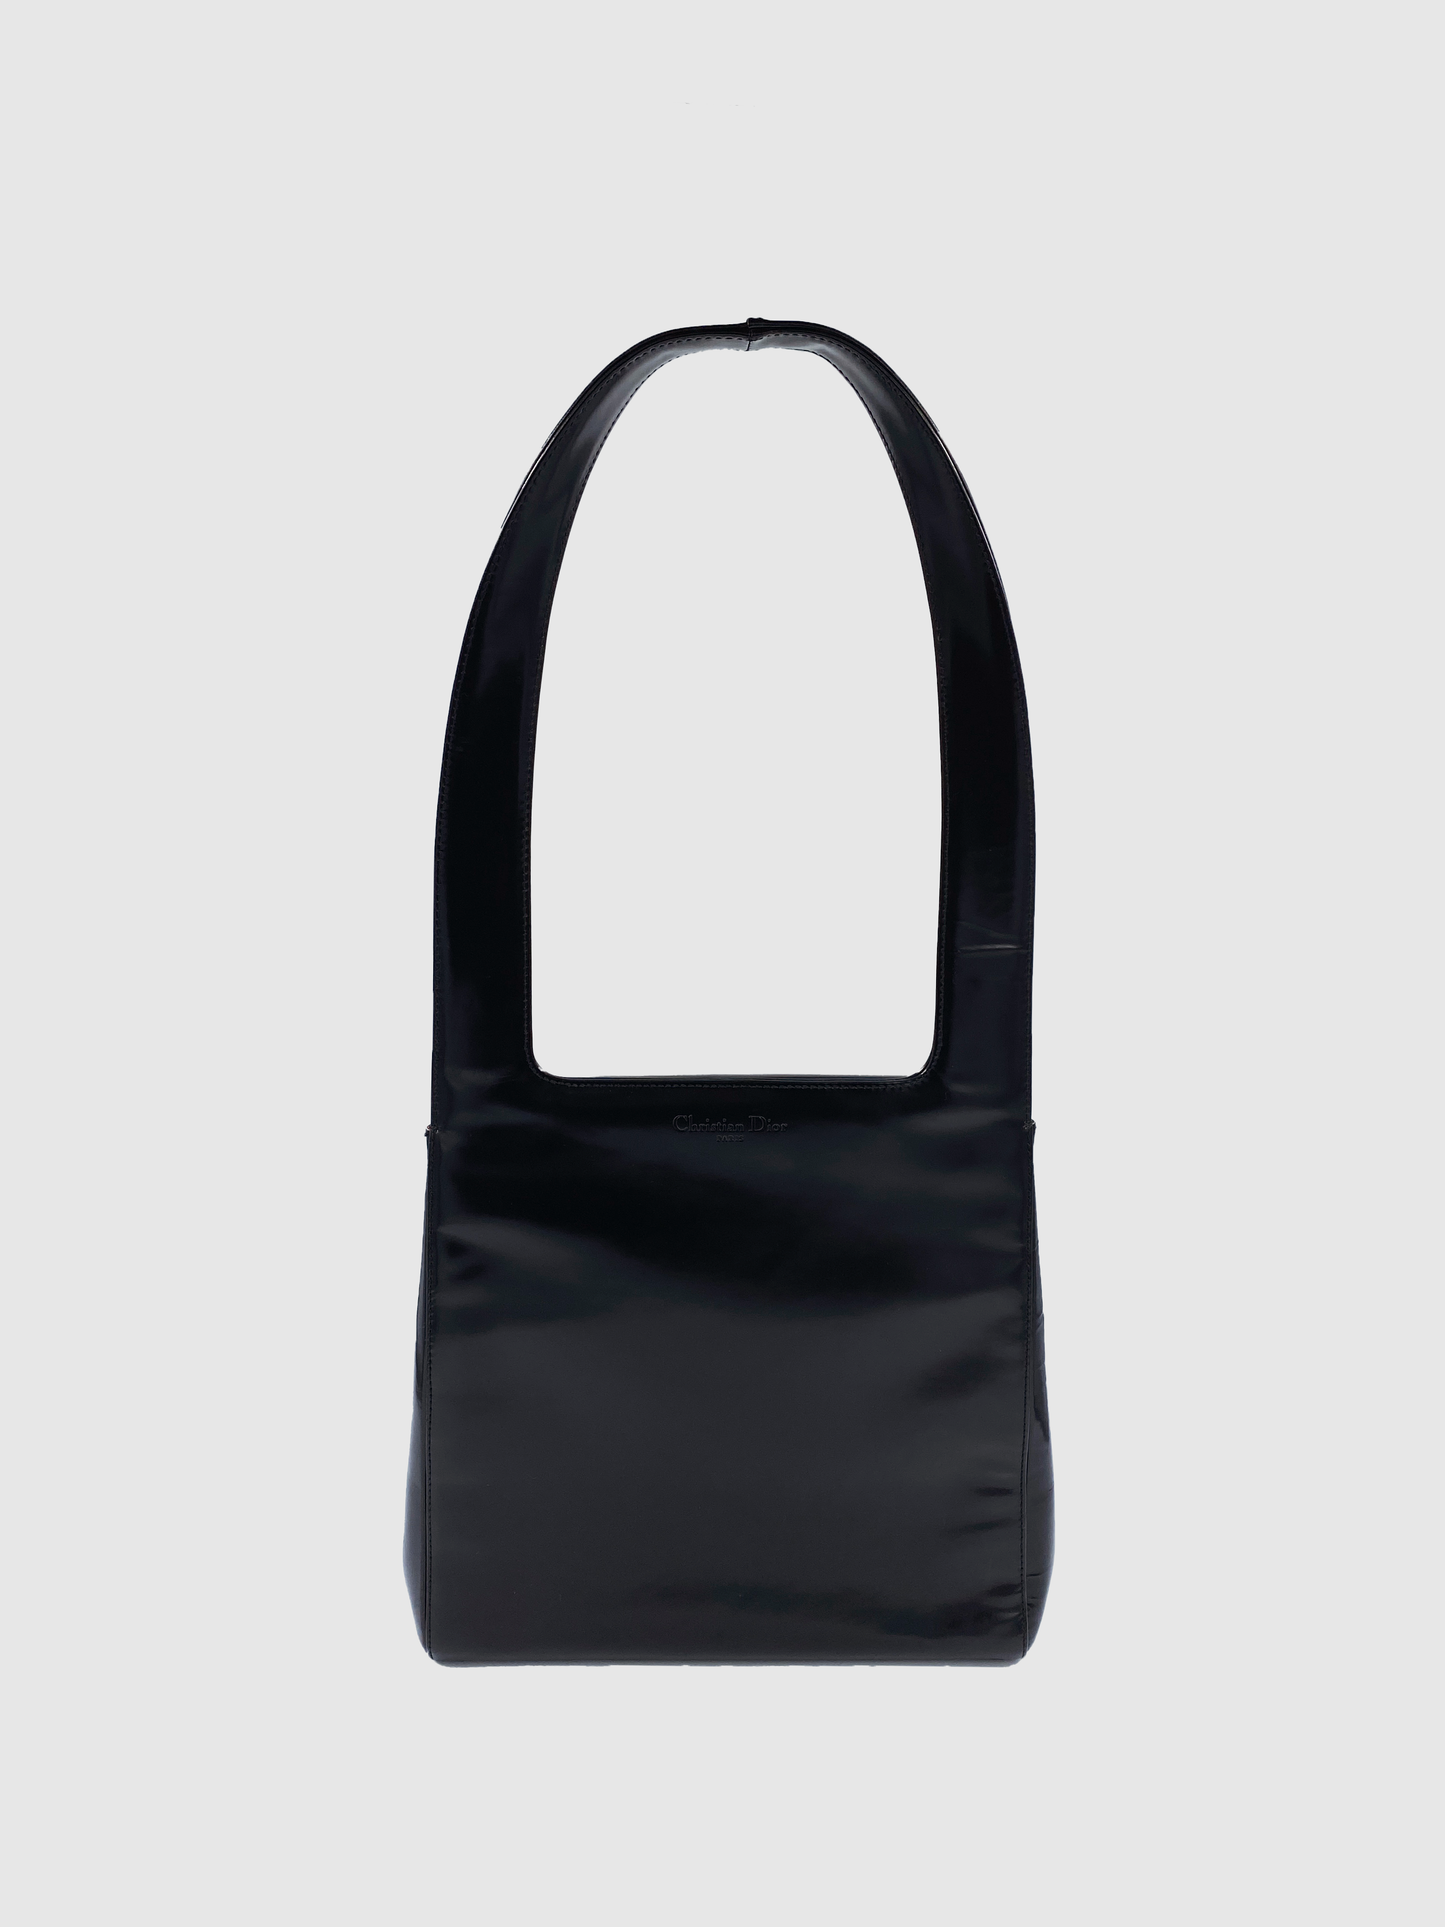 Christian Dior Black Patent Leather Campaign 97' Shoulder Bag